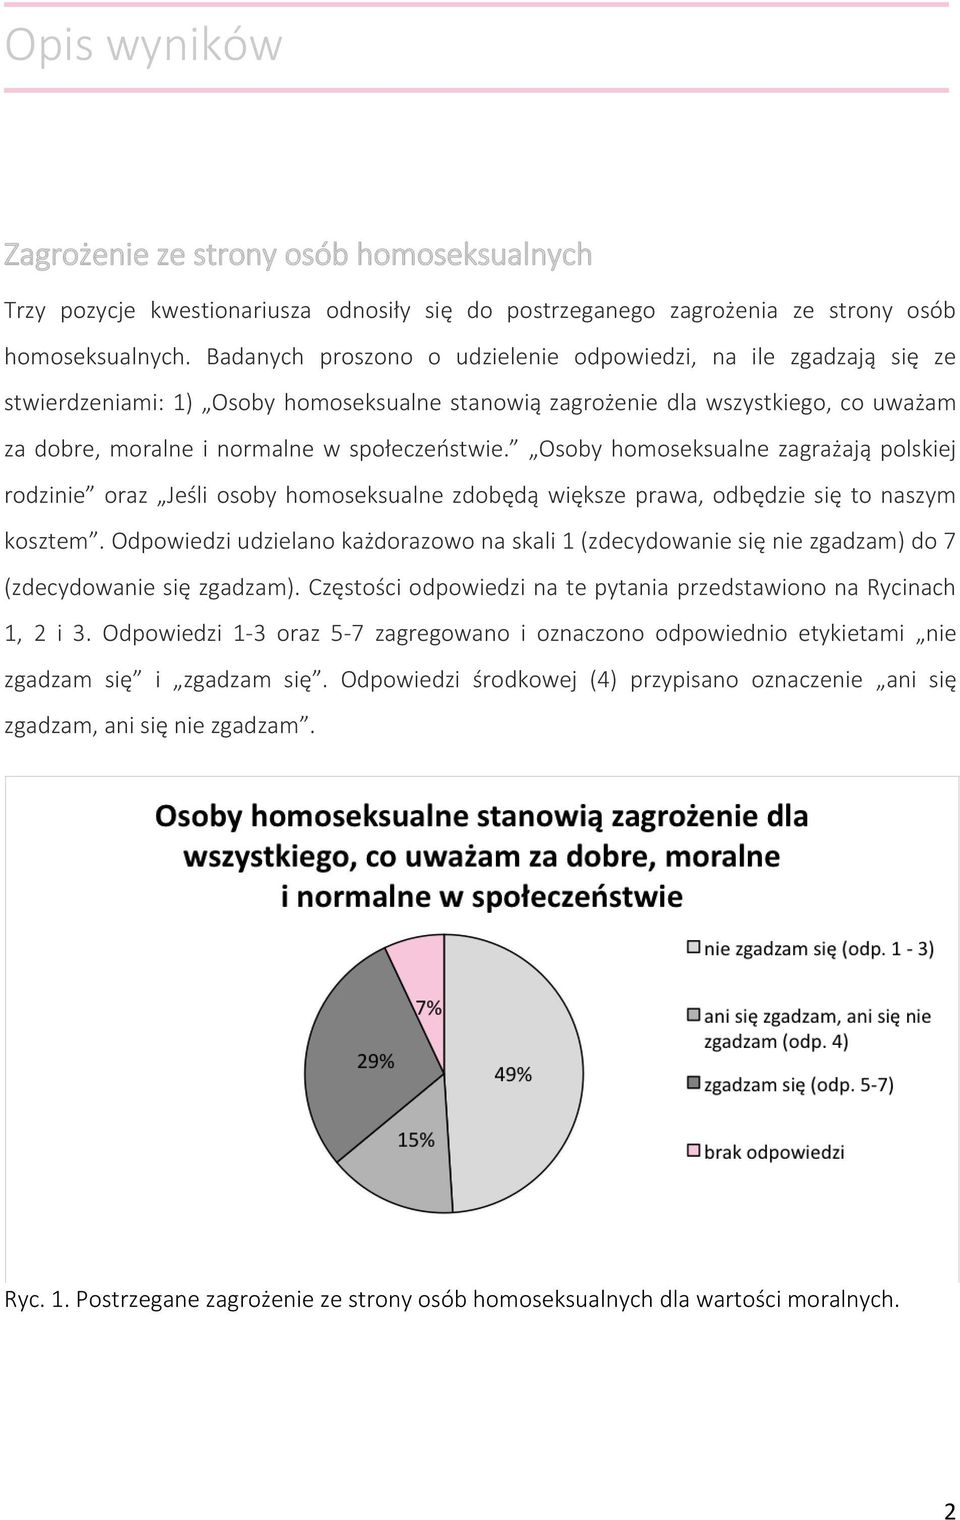 Osoby homoseksualne zagrażają polskiej rodzinie oraz Jeśli osoby homoseksualne zdobędą większe prawa, odbędzie się to naszym kosztem.